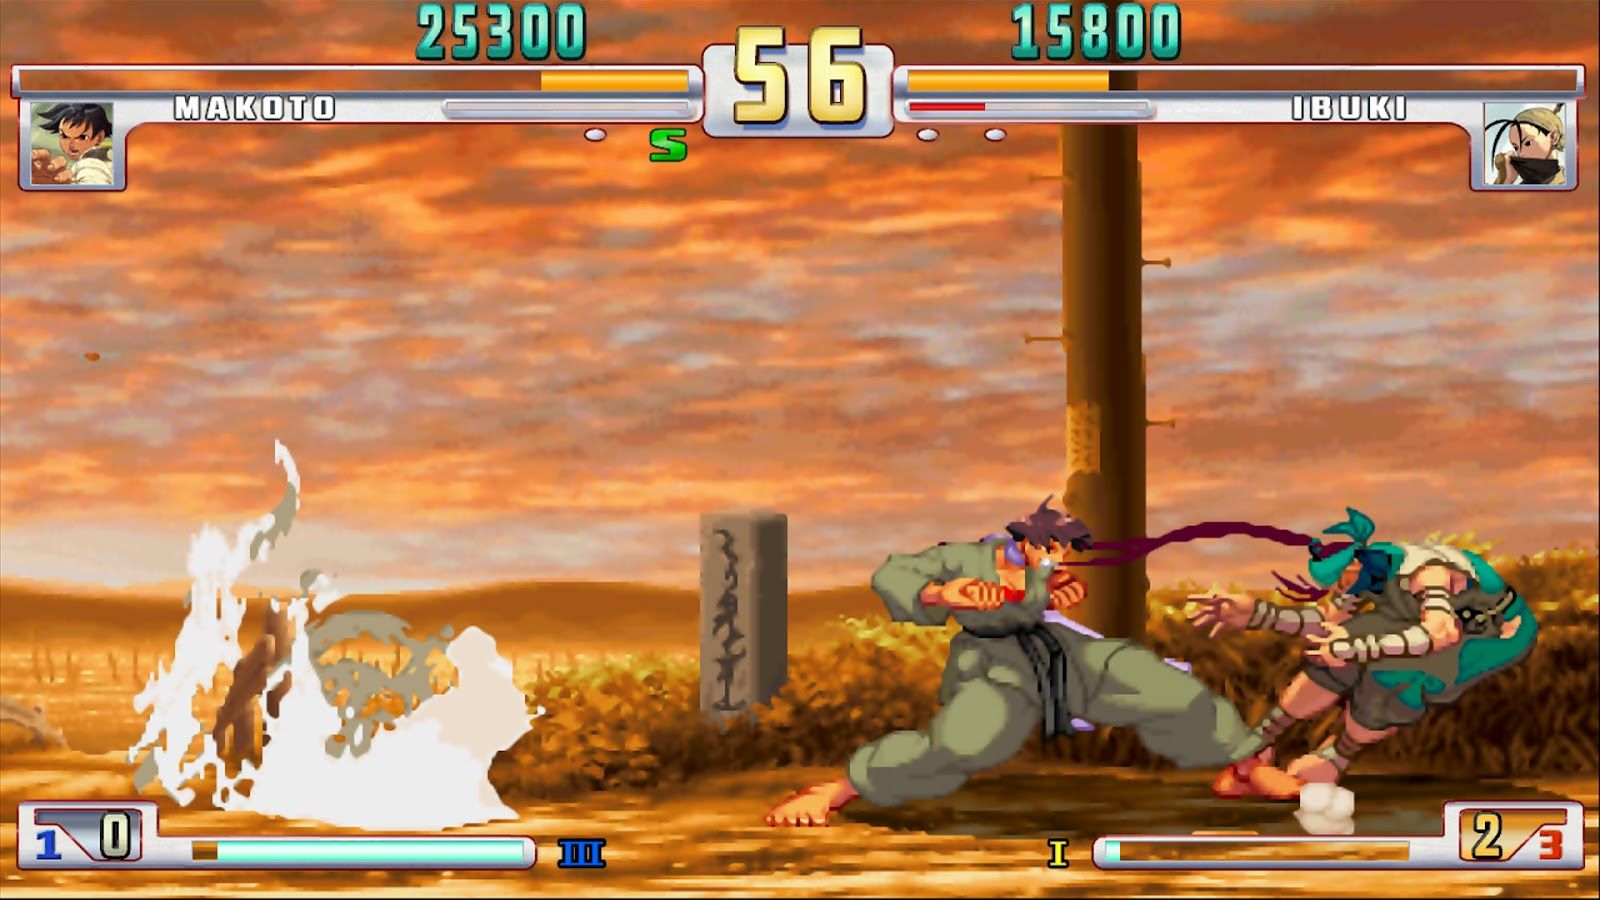 Street Fighter III - Third Strike